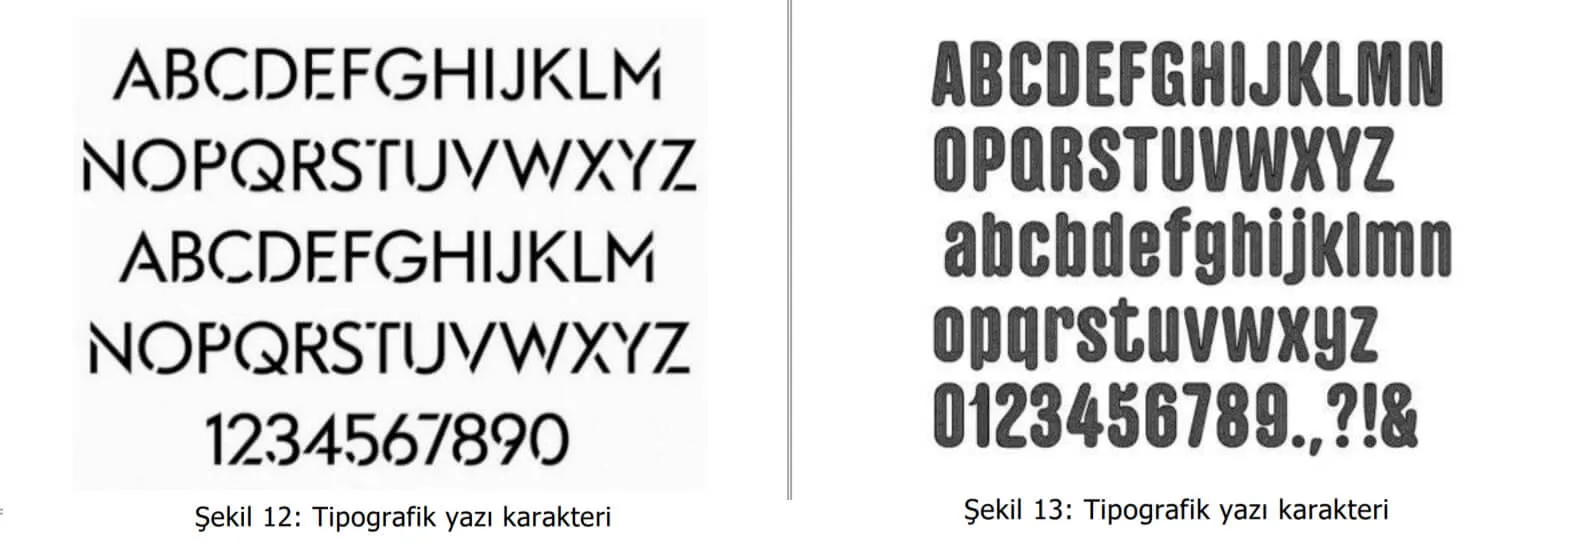 tipografik yazı karakter örnekleri-kemalpaşa patent